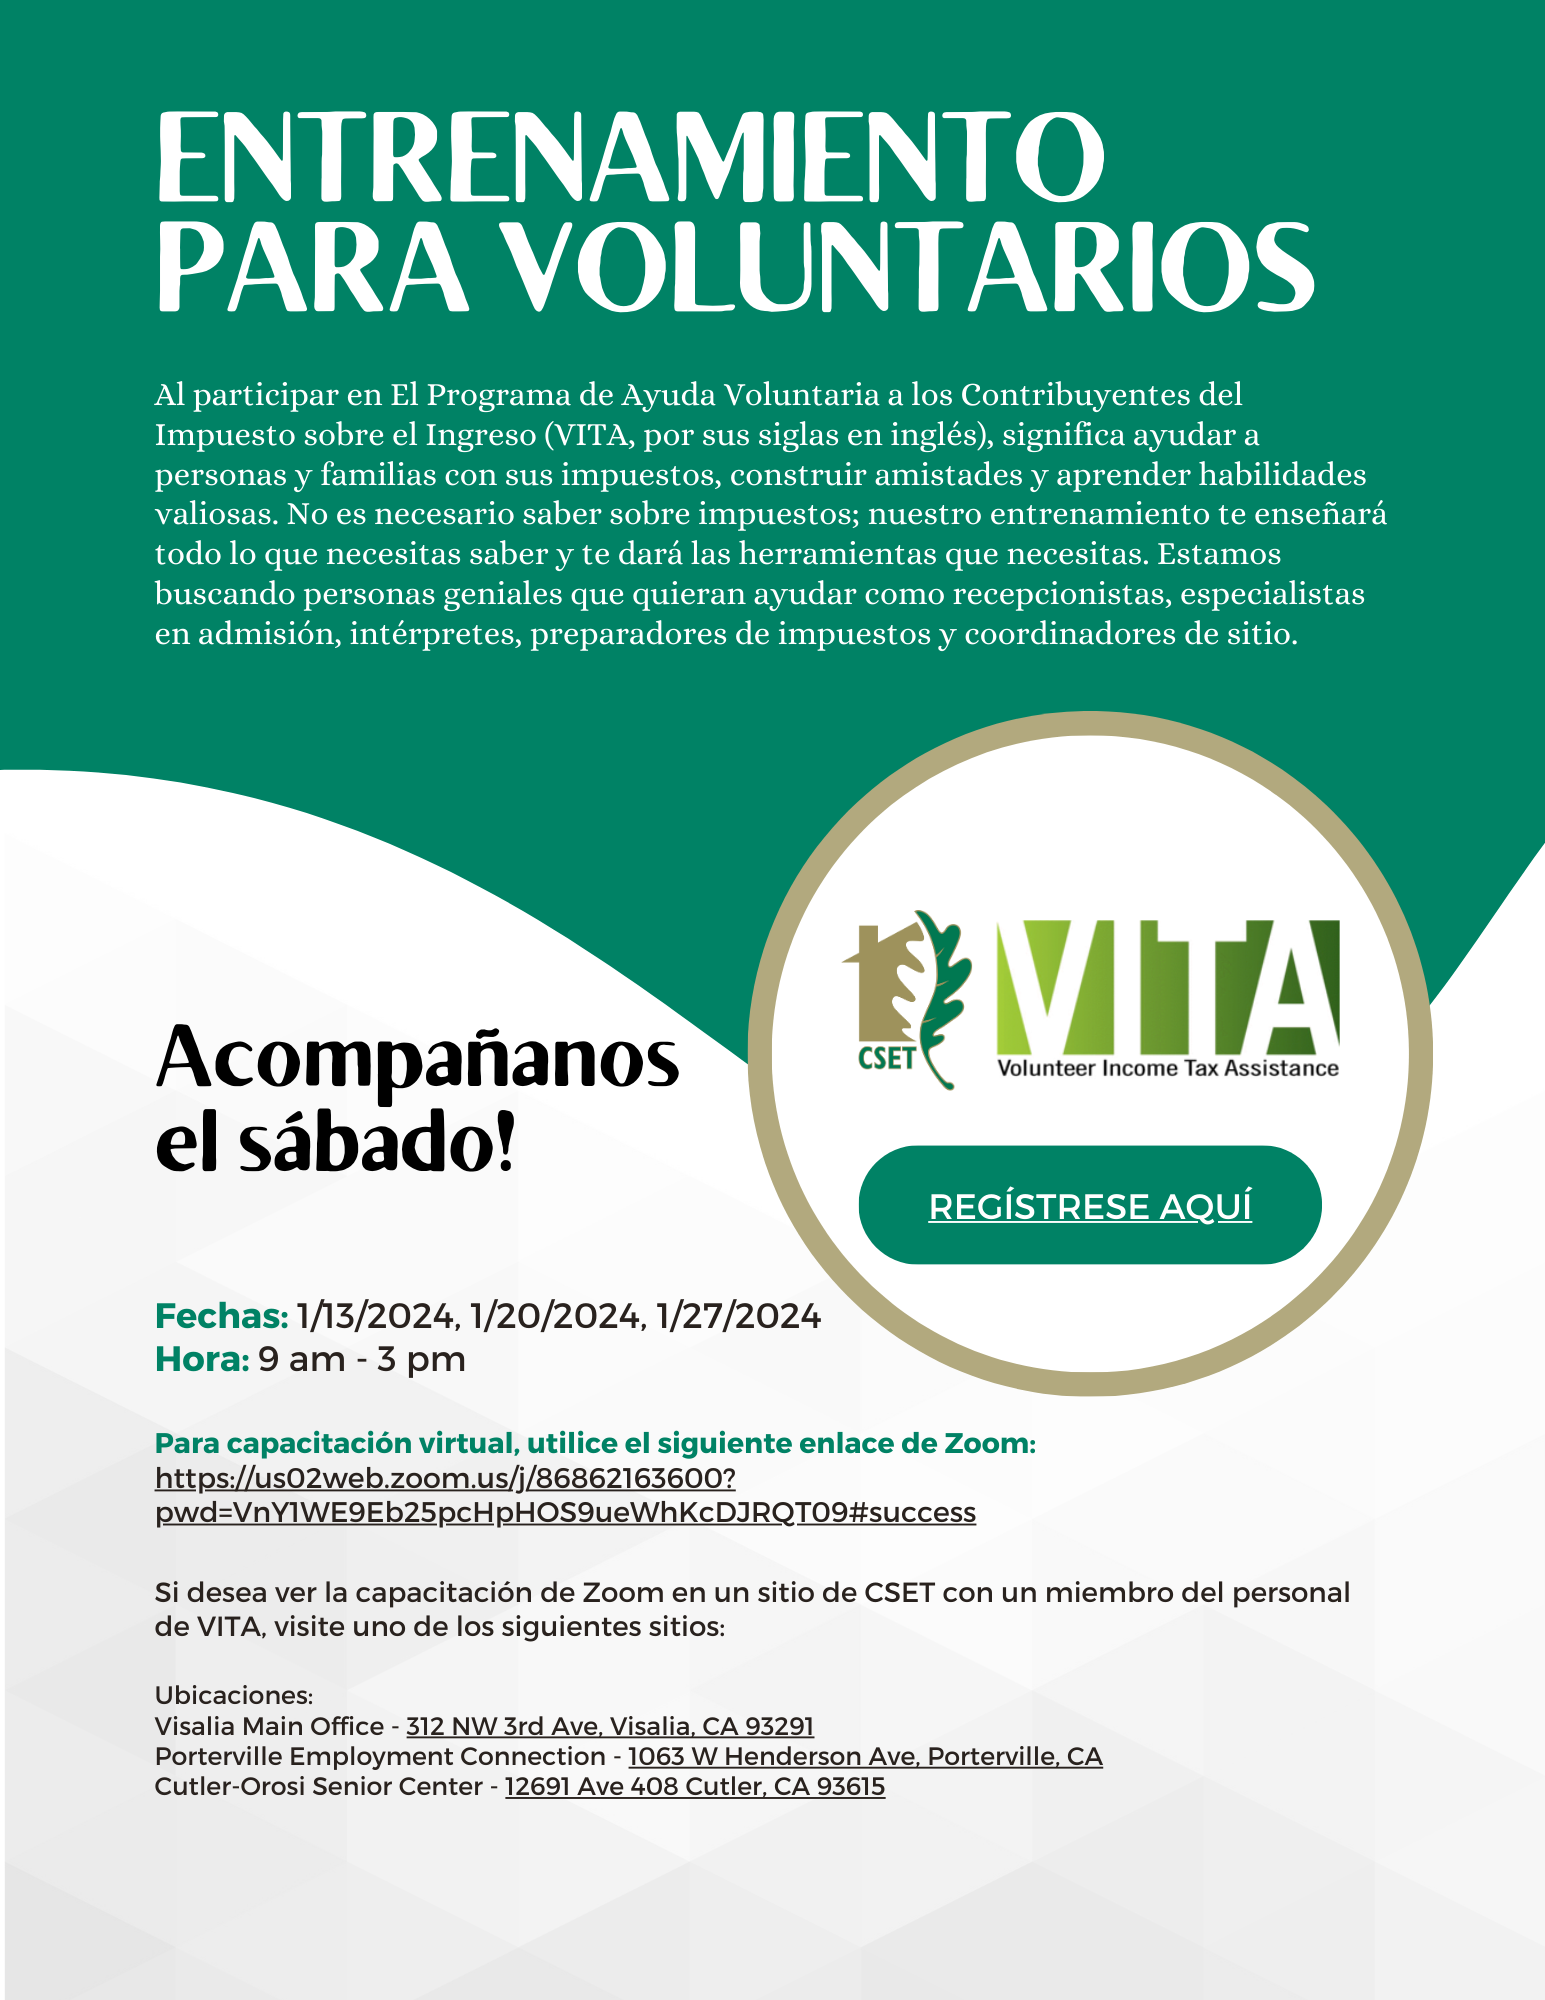 VITA Volunteer Training Flyer 2024 (Spanish).png